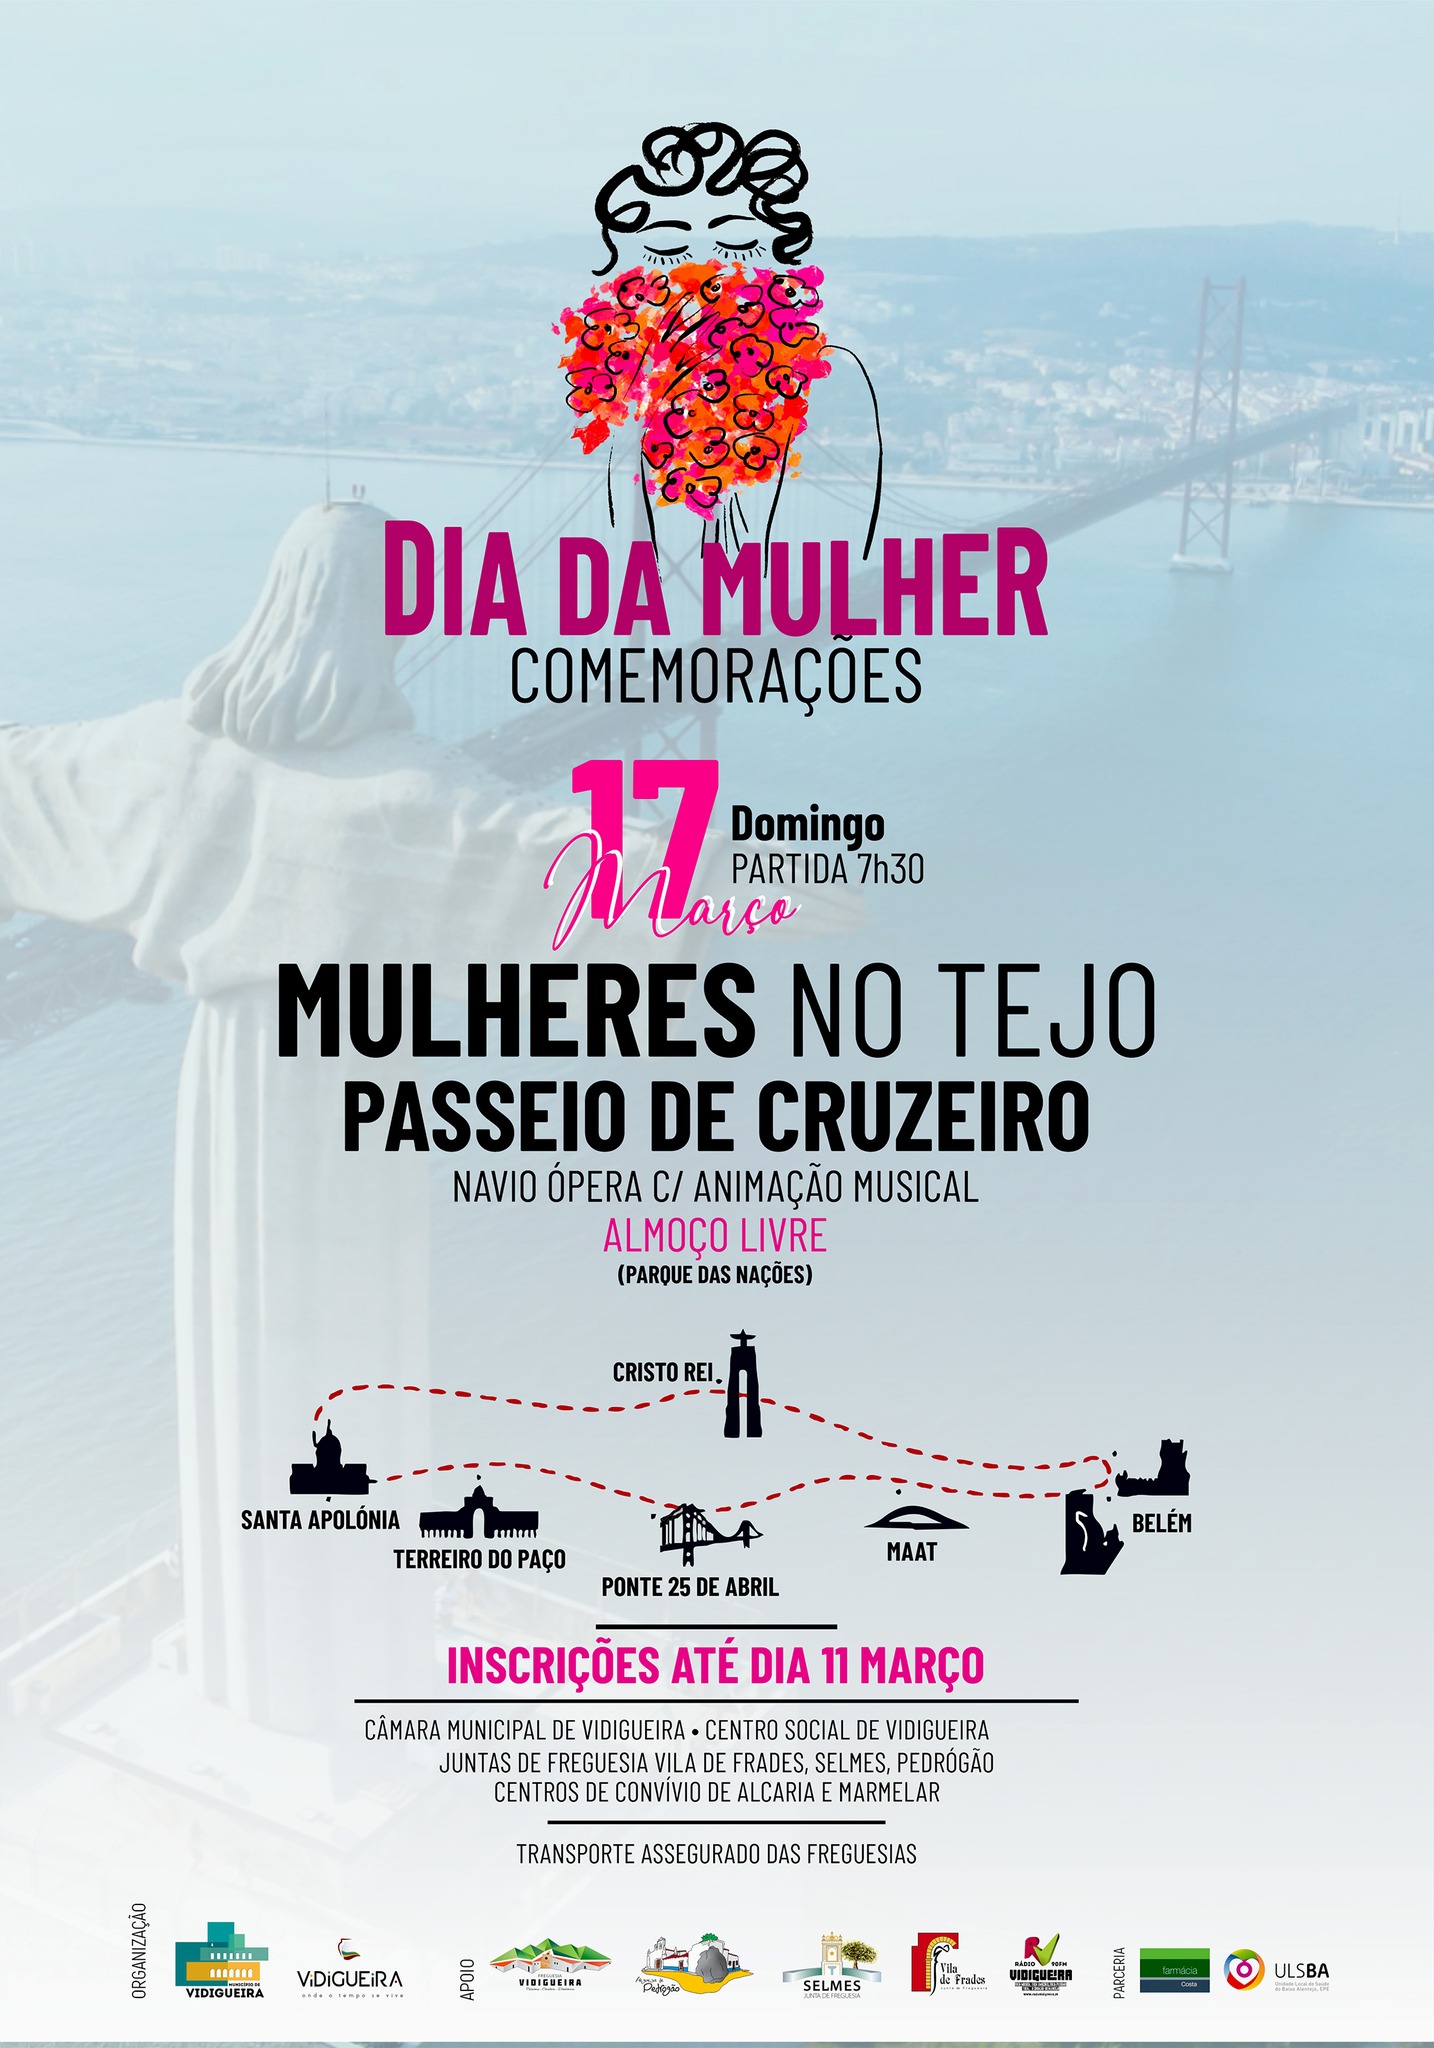 Dia Internacional da Mulher - Cruzeiro no Tejo